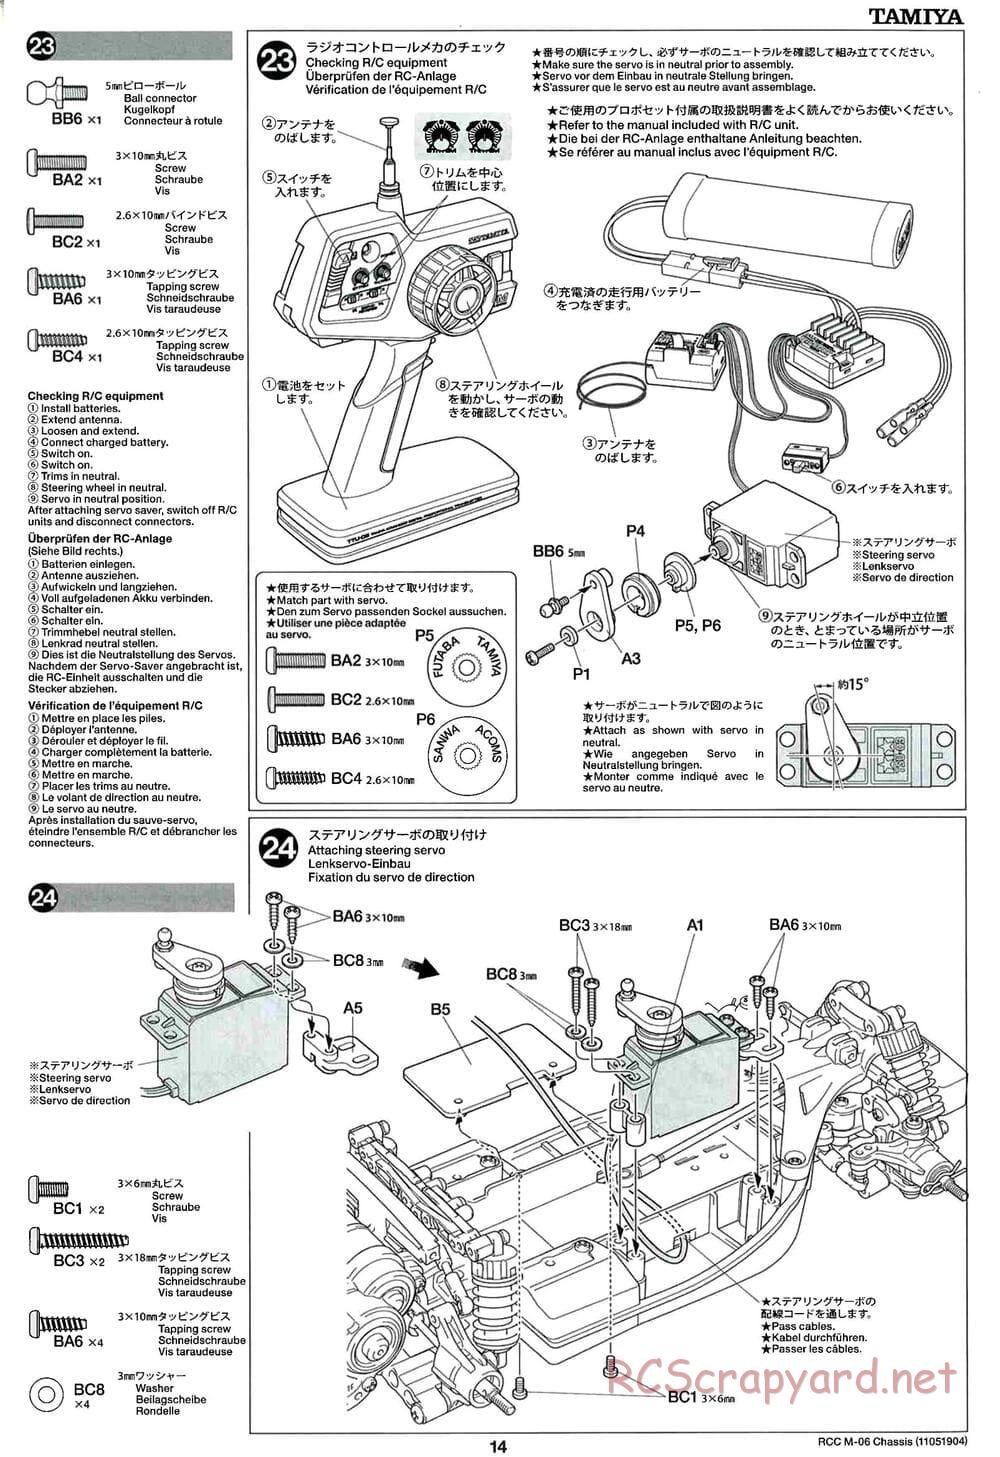 Tamiya - M-06 Chassis - Manual - Page 14